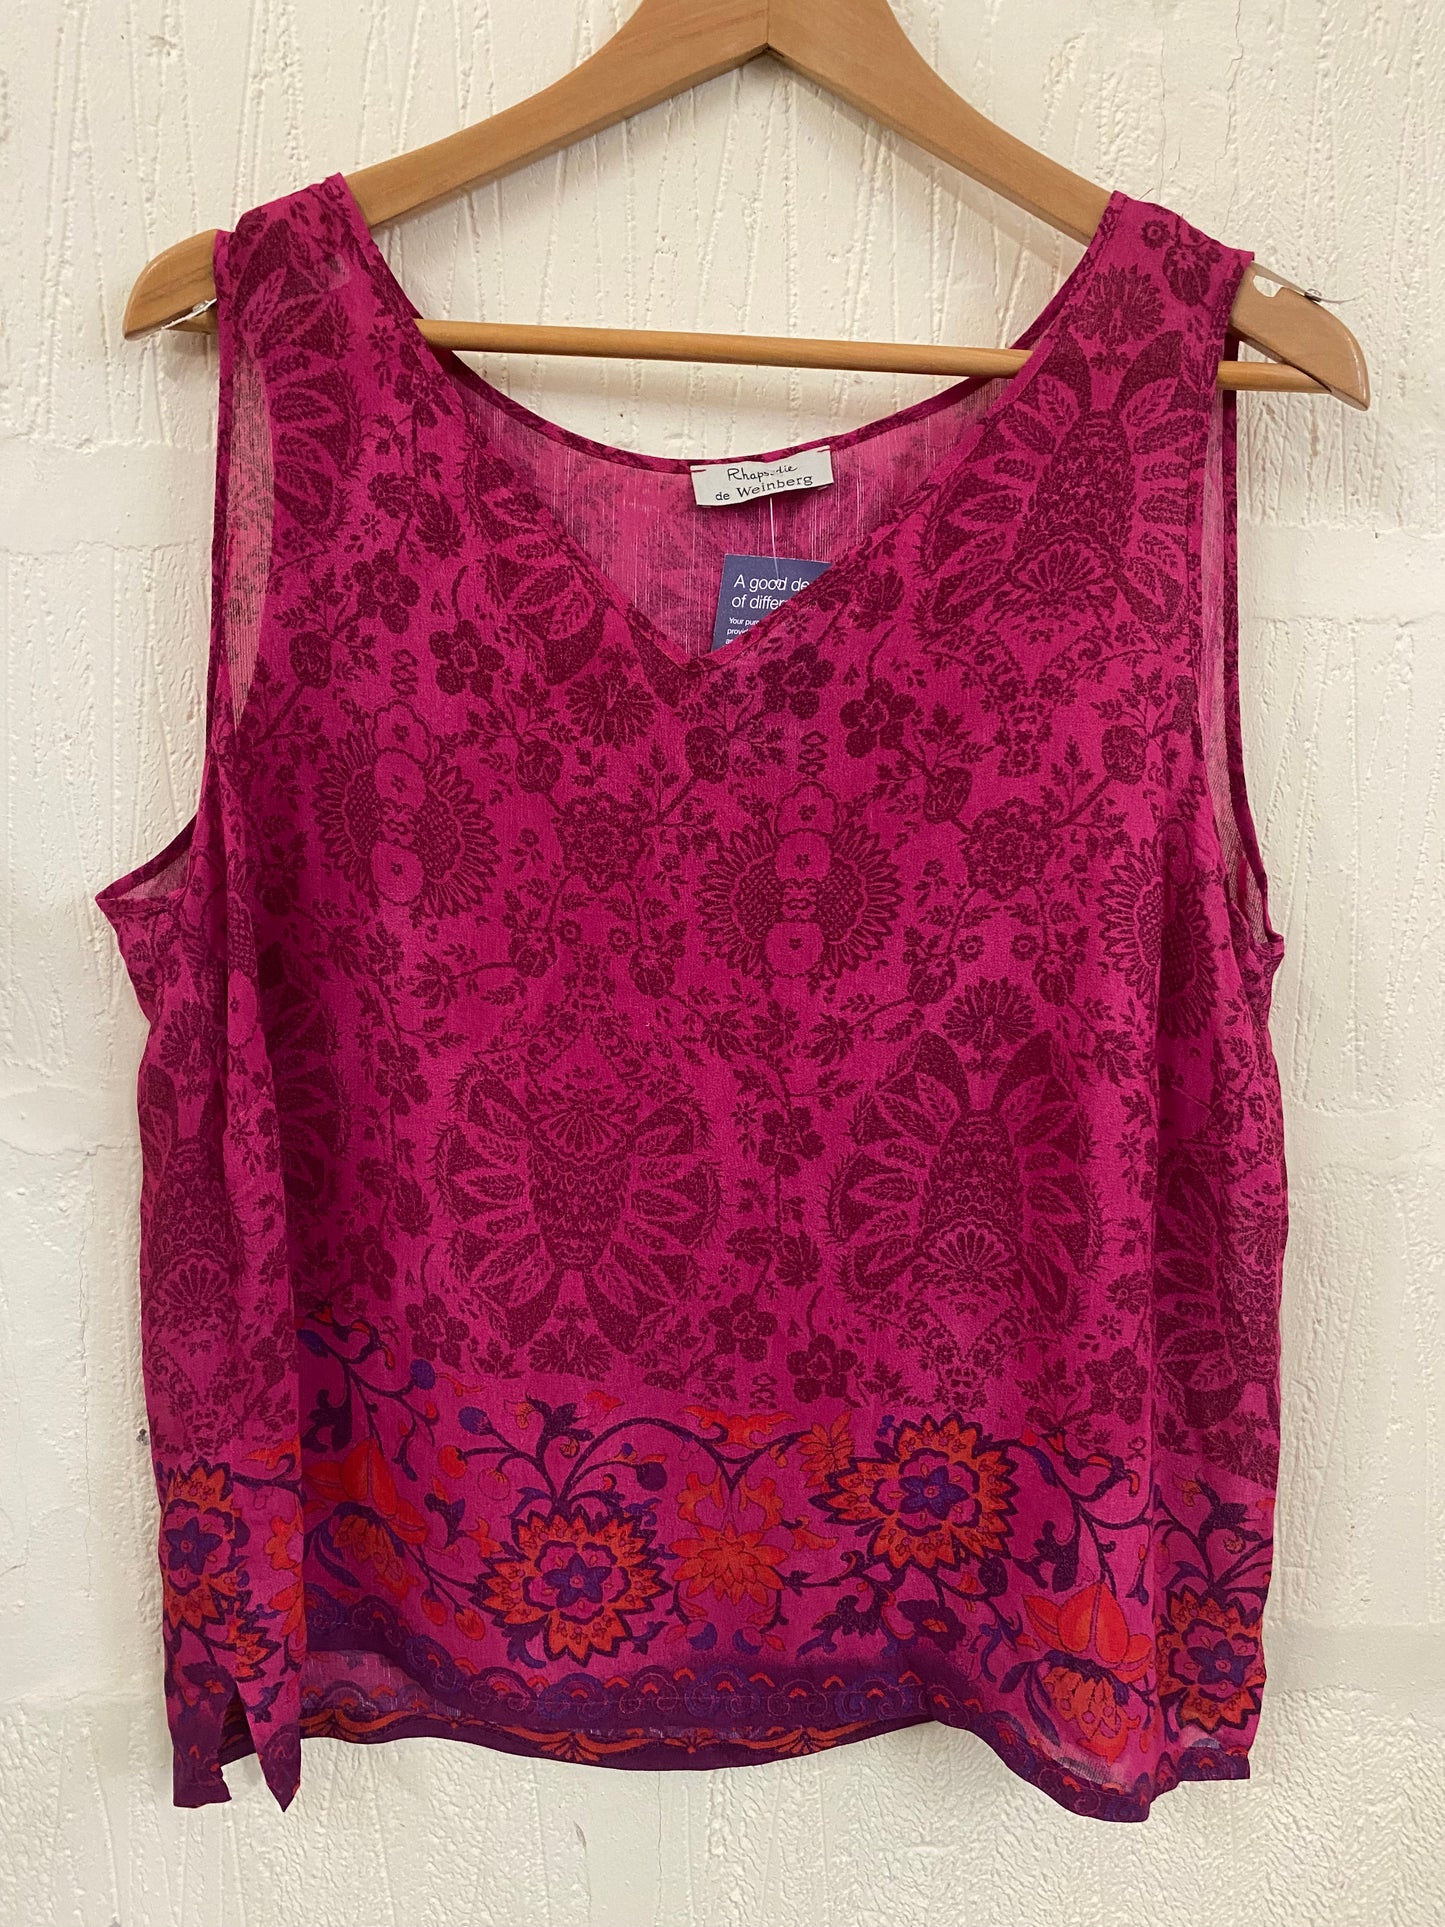 Pink Patterned Floral Printed Vest Top Size L